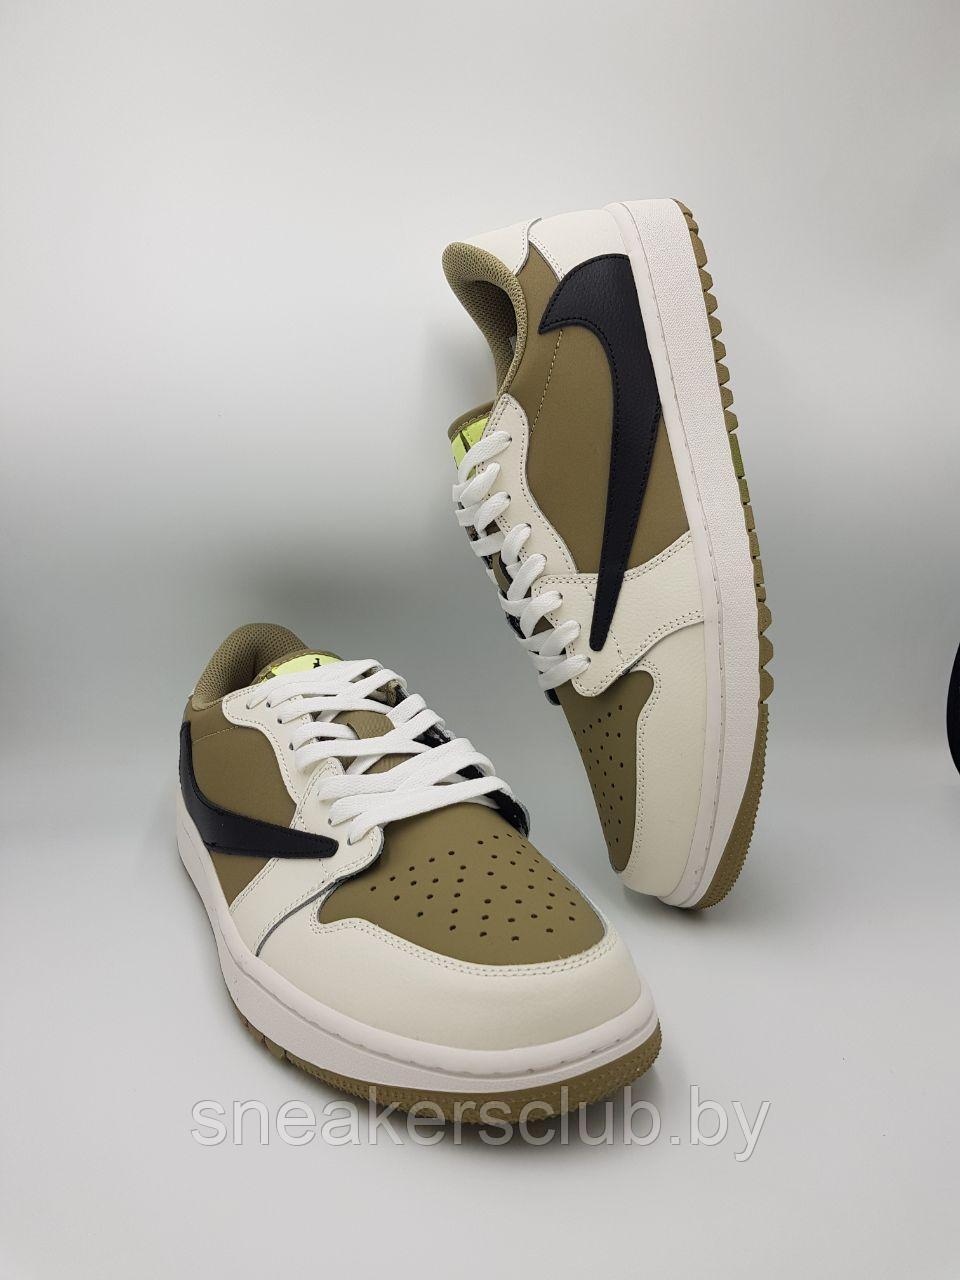 Кроссовки мужские Nike Air Jordan 1 Retro Low OG SP Travis Scott/большие размеры/демисезонные / повседневные